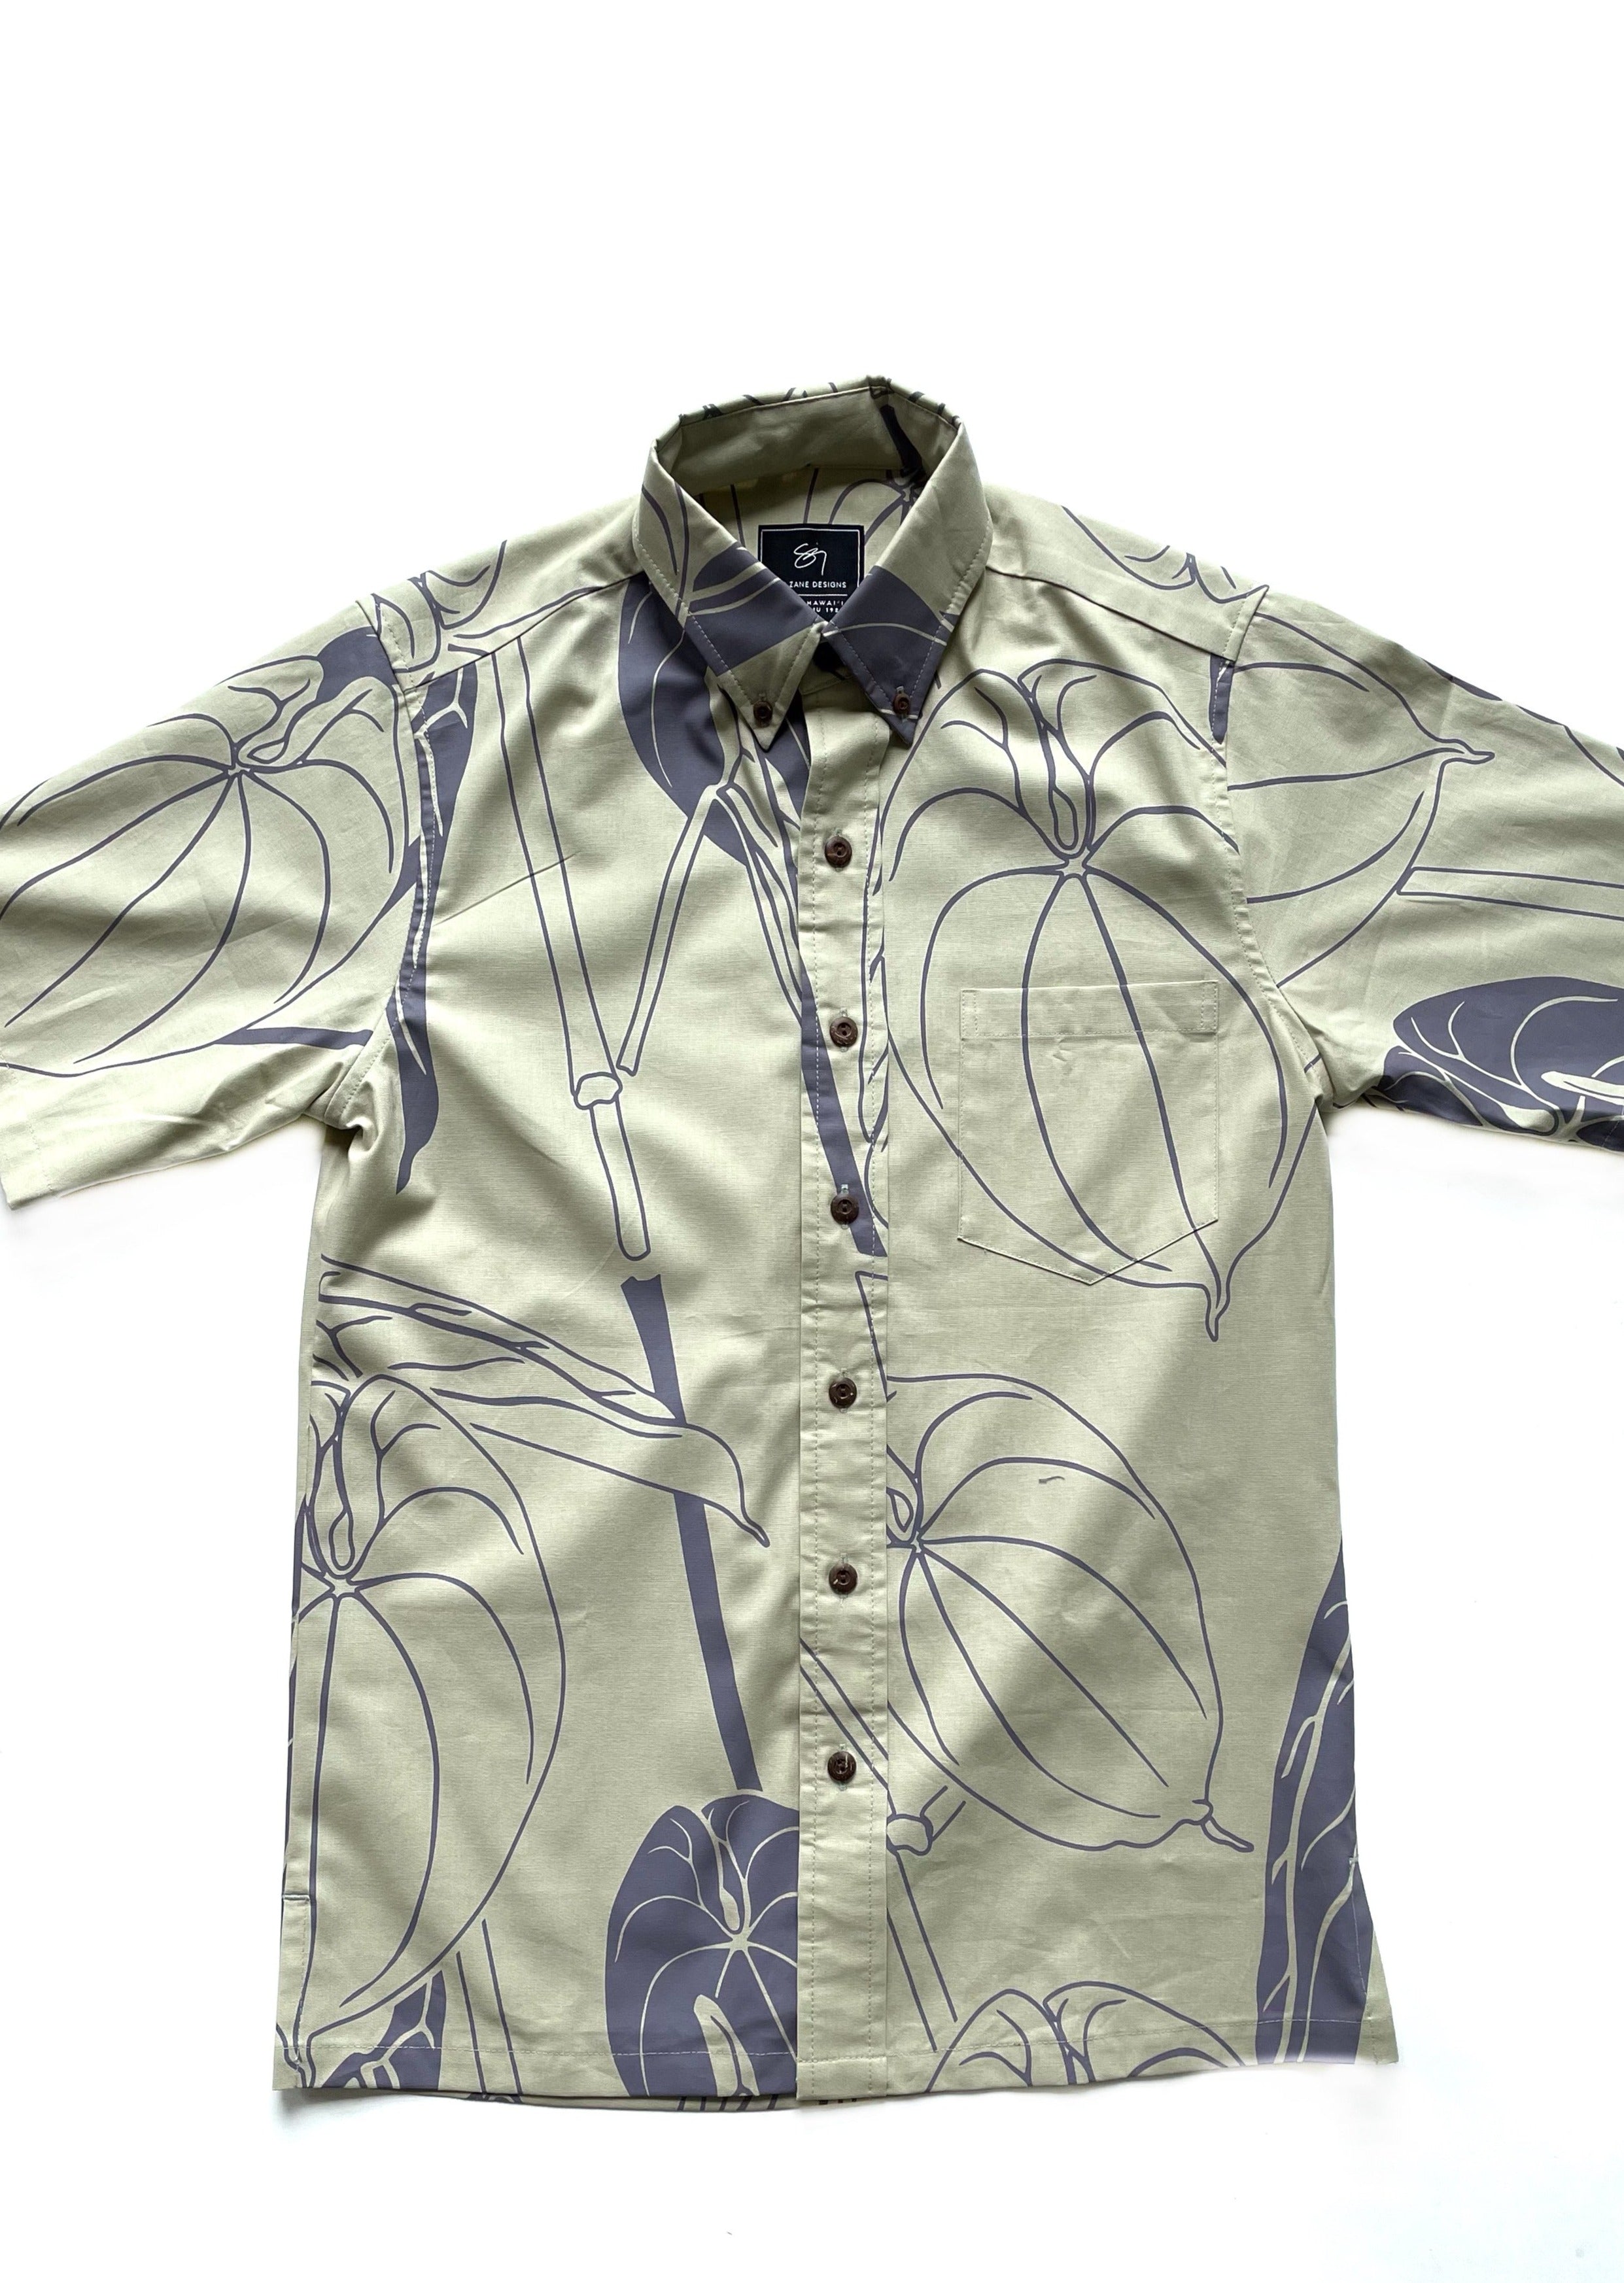 Hoihoi Hoikuahiwi Button Up Aloha Shirt - Limestone